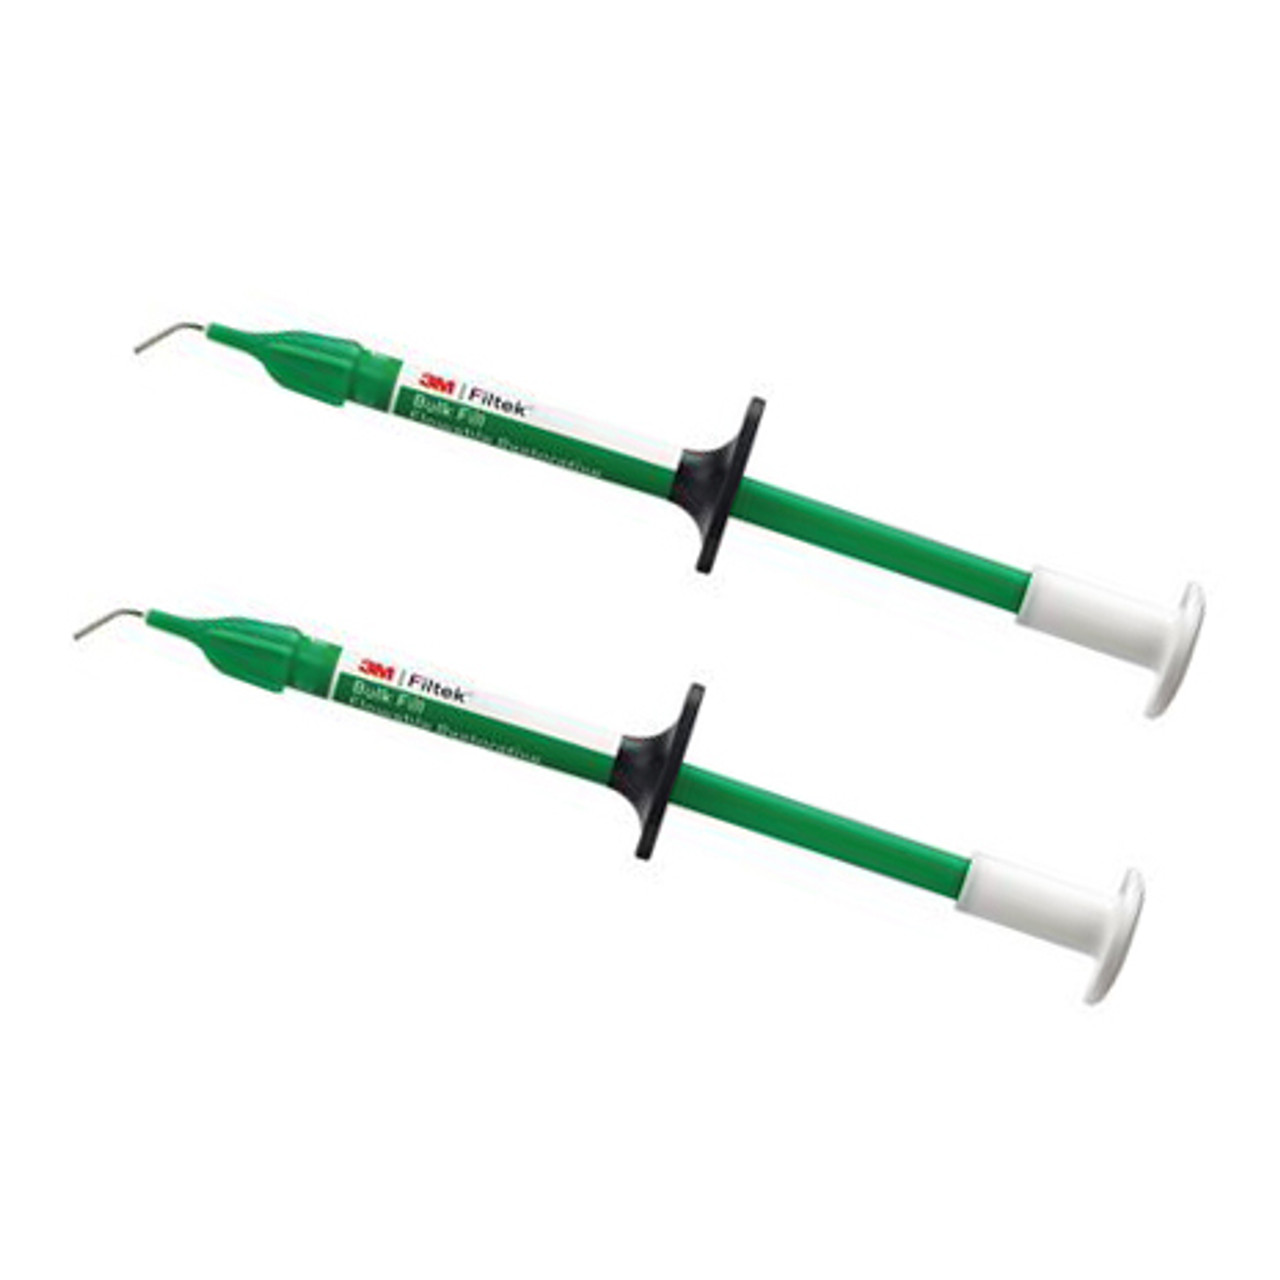 Filtek Bulk Fill Flow 2g Syringe 2/Pk - Dental Wholesale Direct